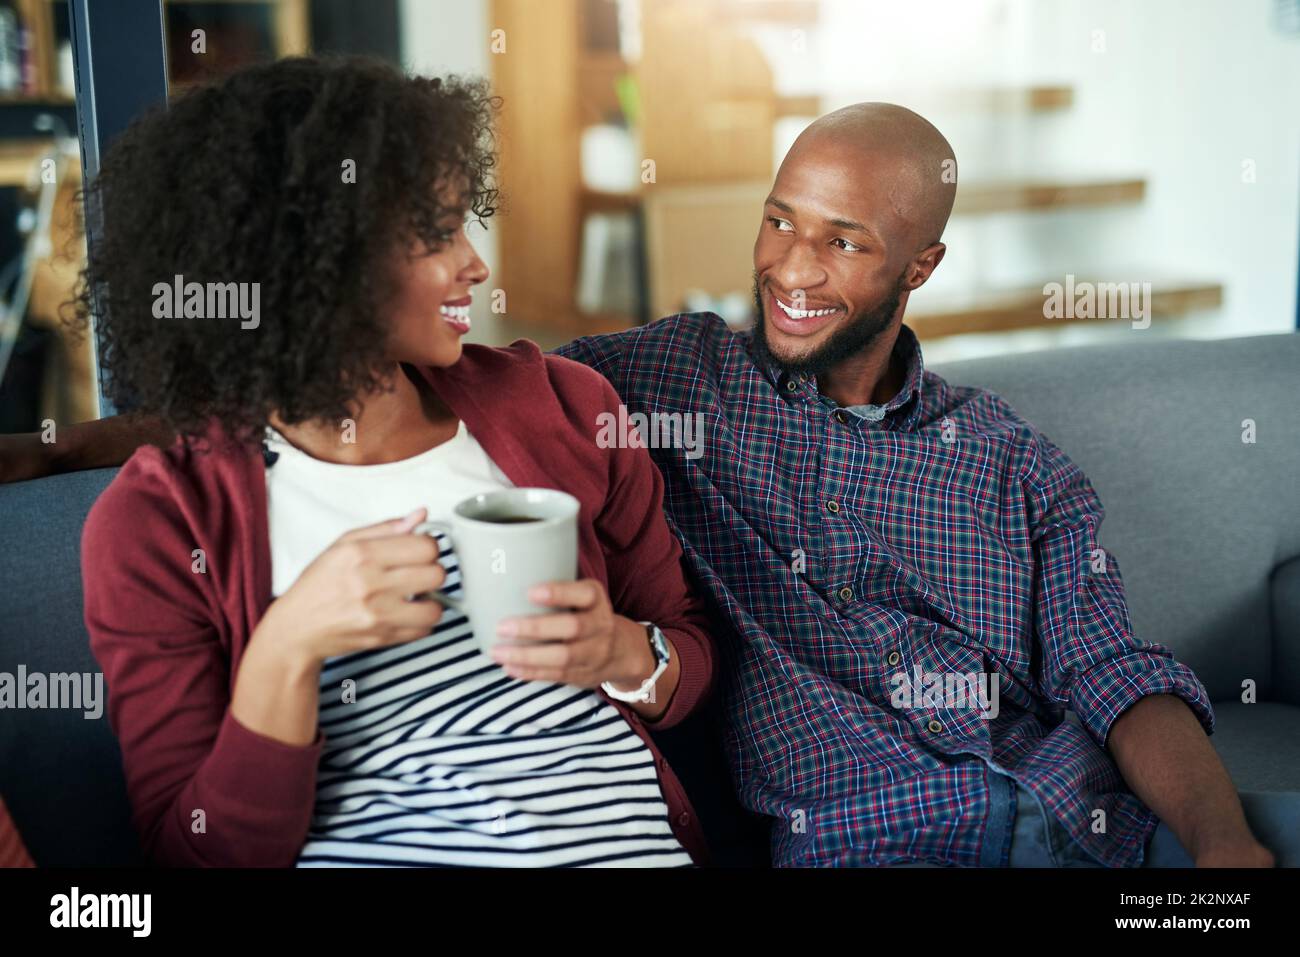 Il fine settimana è il momento ideale per trascorrere un soggiorno di qualità. Scatto di una giovane coppia felice godendo una pausa caffè rilassante insieme sul divano a casa. Foto Stock